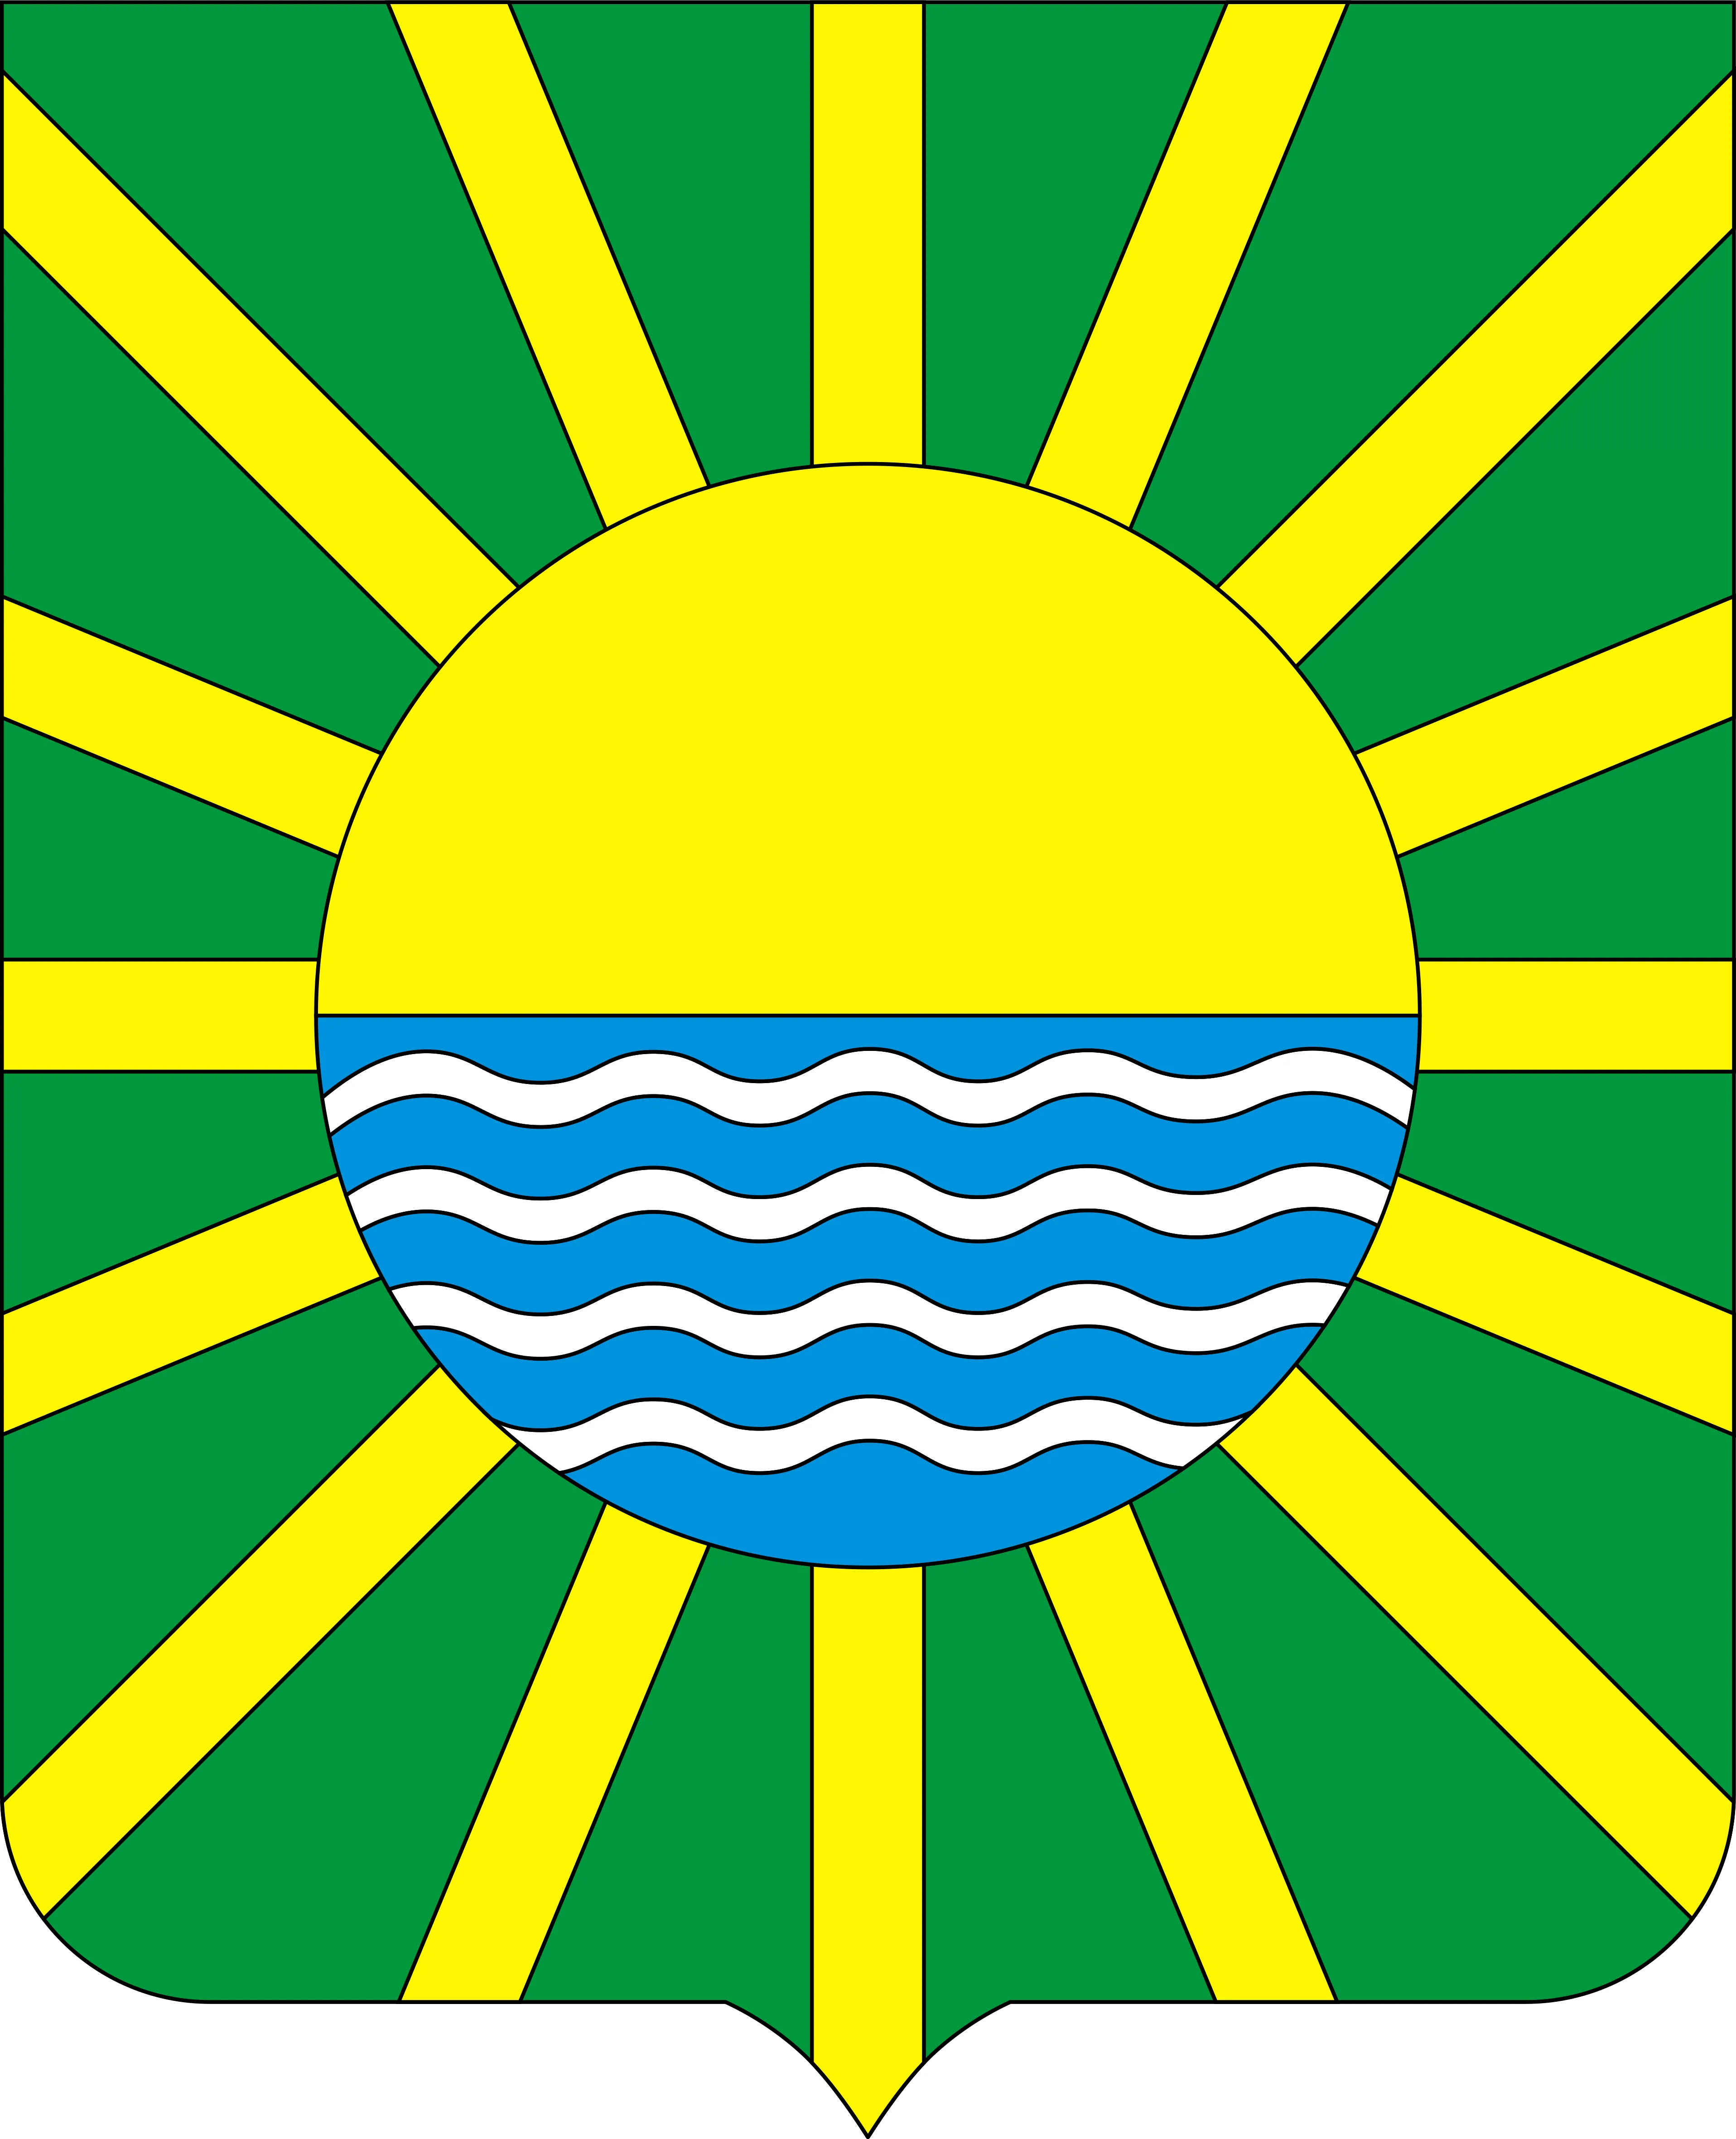 Герб города Славгорода Алтайского края